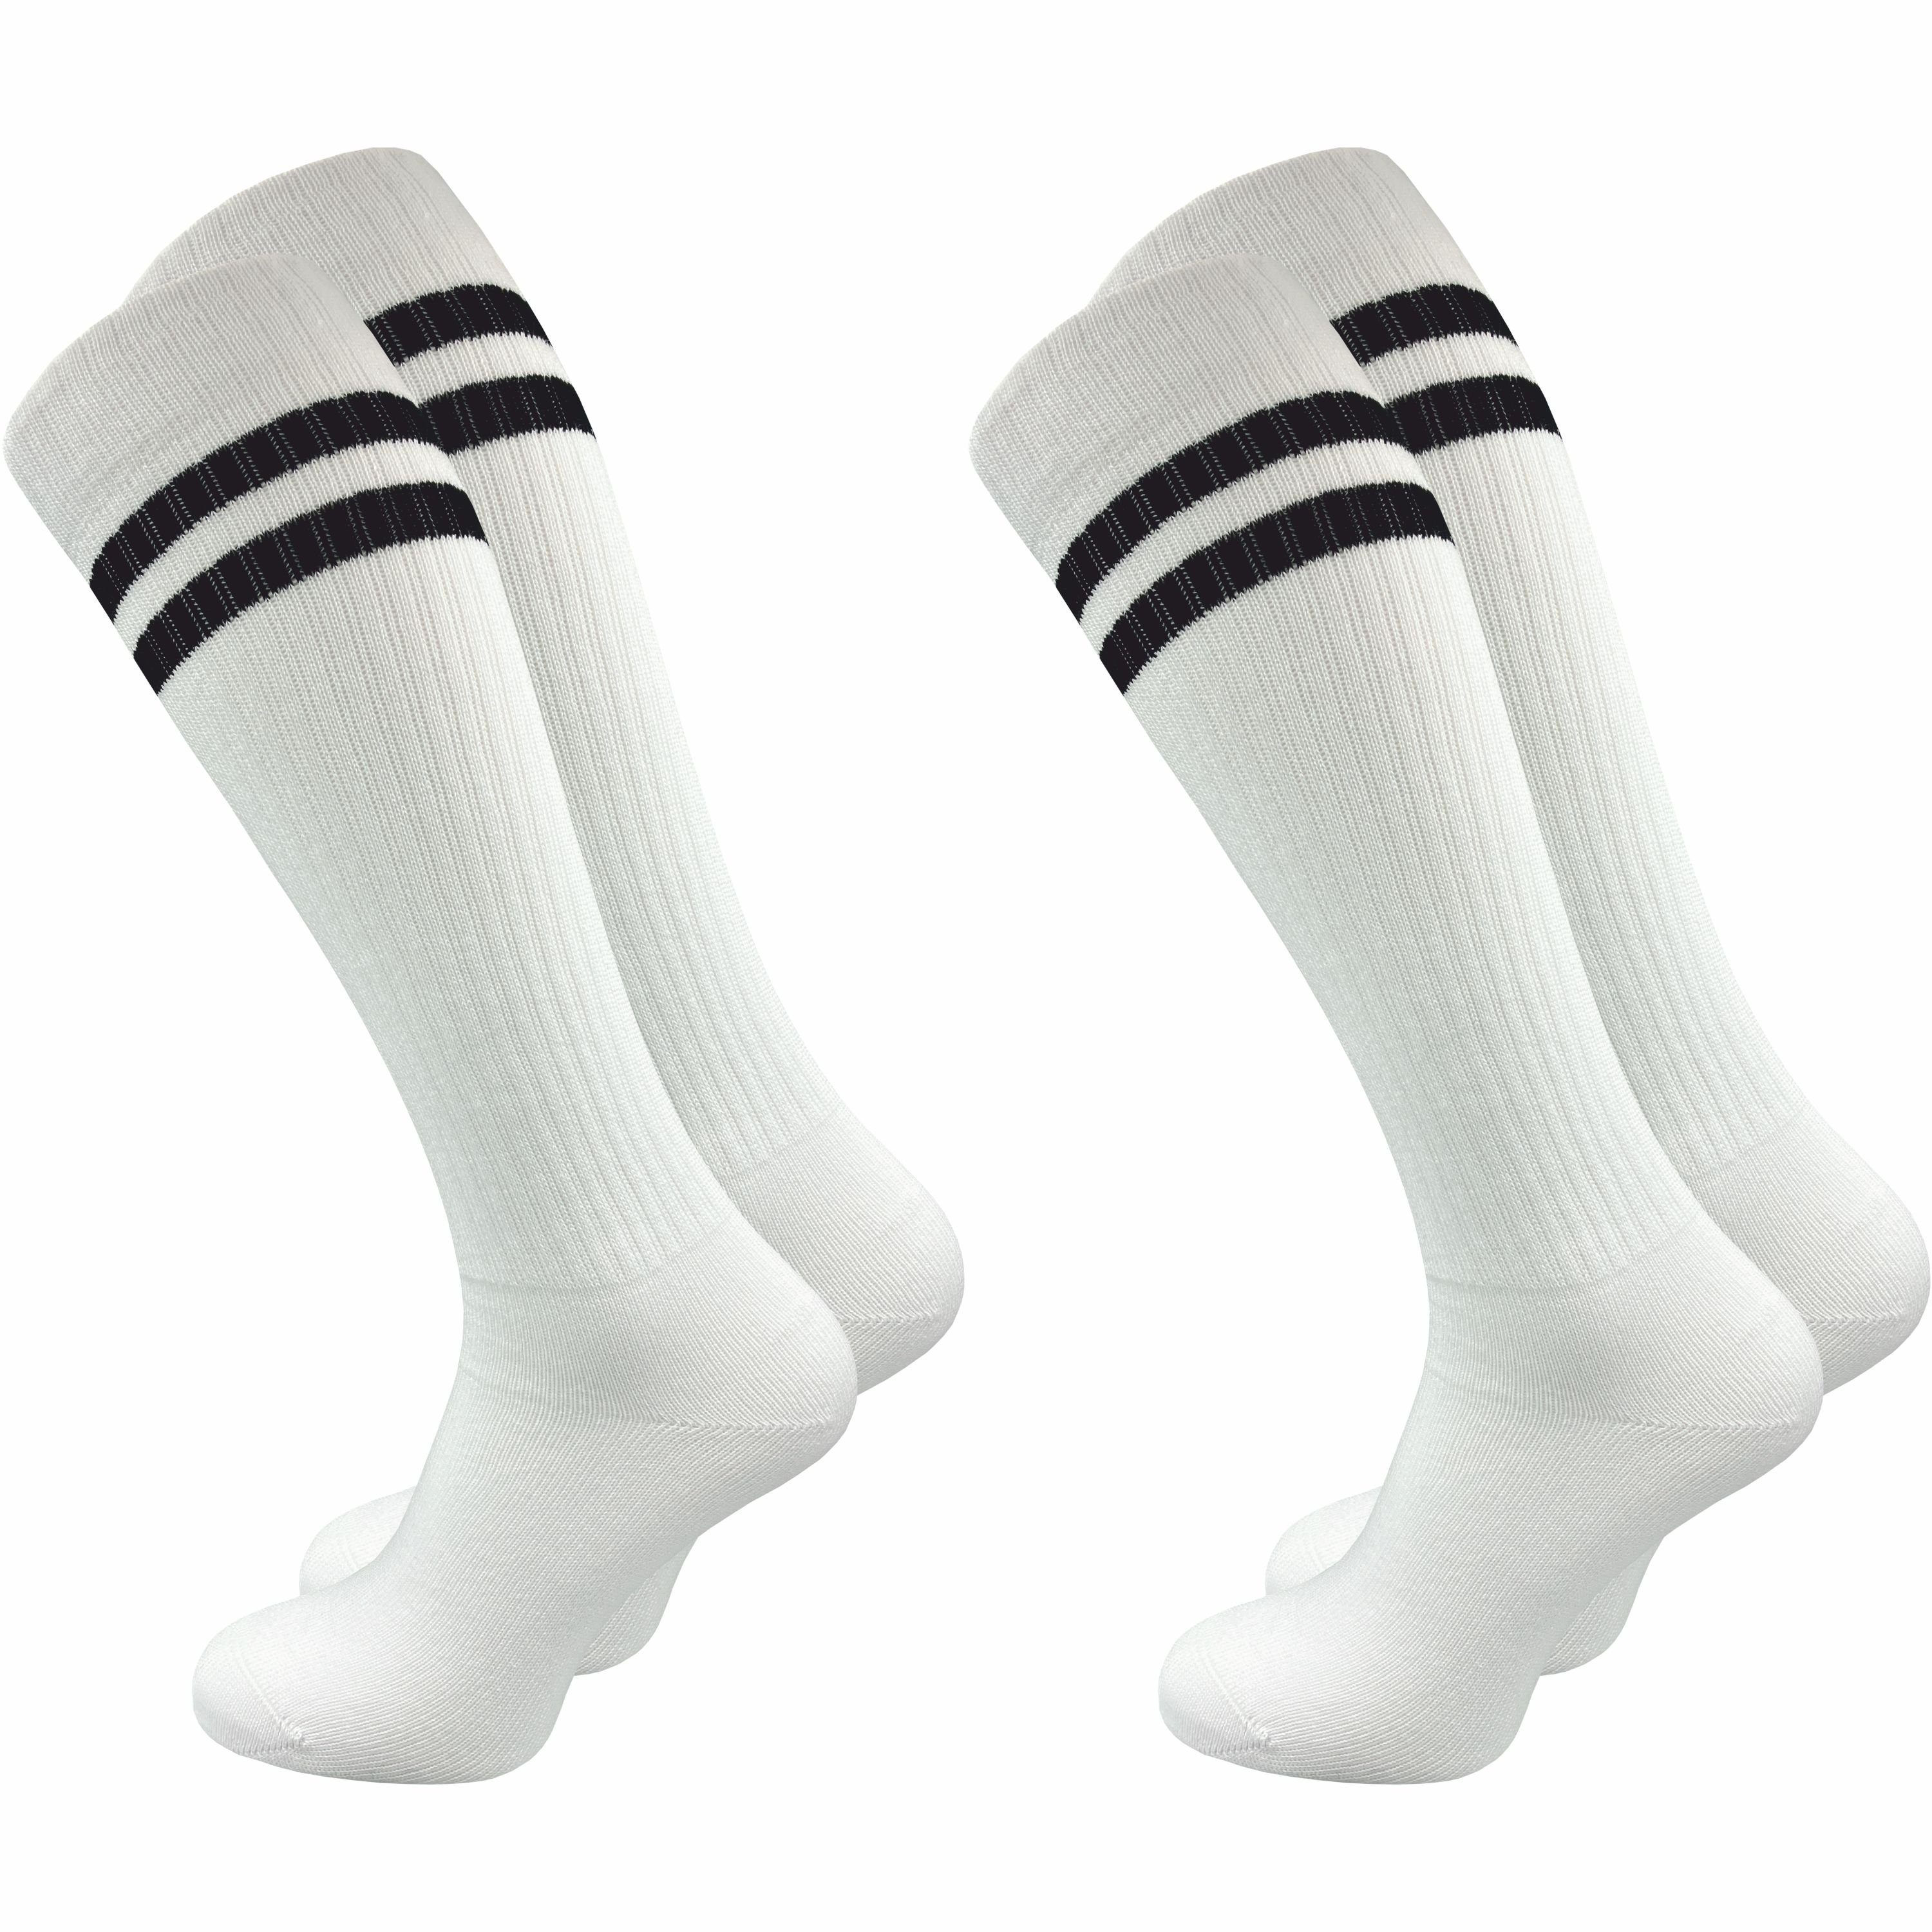 GAWILO Kniestrümpfe Retro für Herren mit stylischen Streifen - weiß &  schwarz - Baumwolle (2 Paar) Knielange Socken im sportlichen Look - auch  zum Wandern geeignet